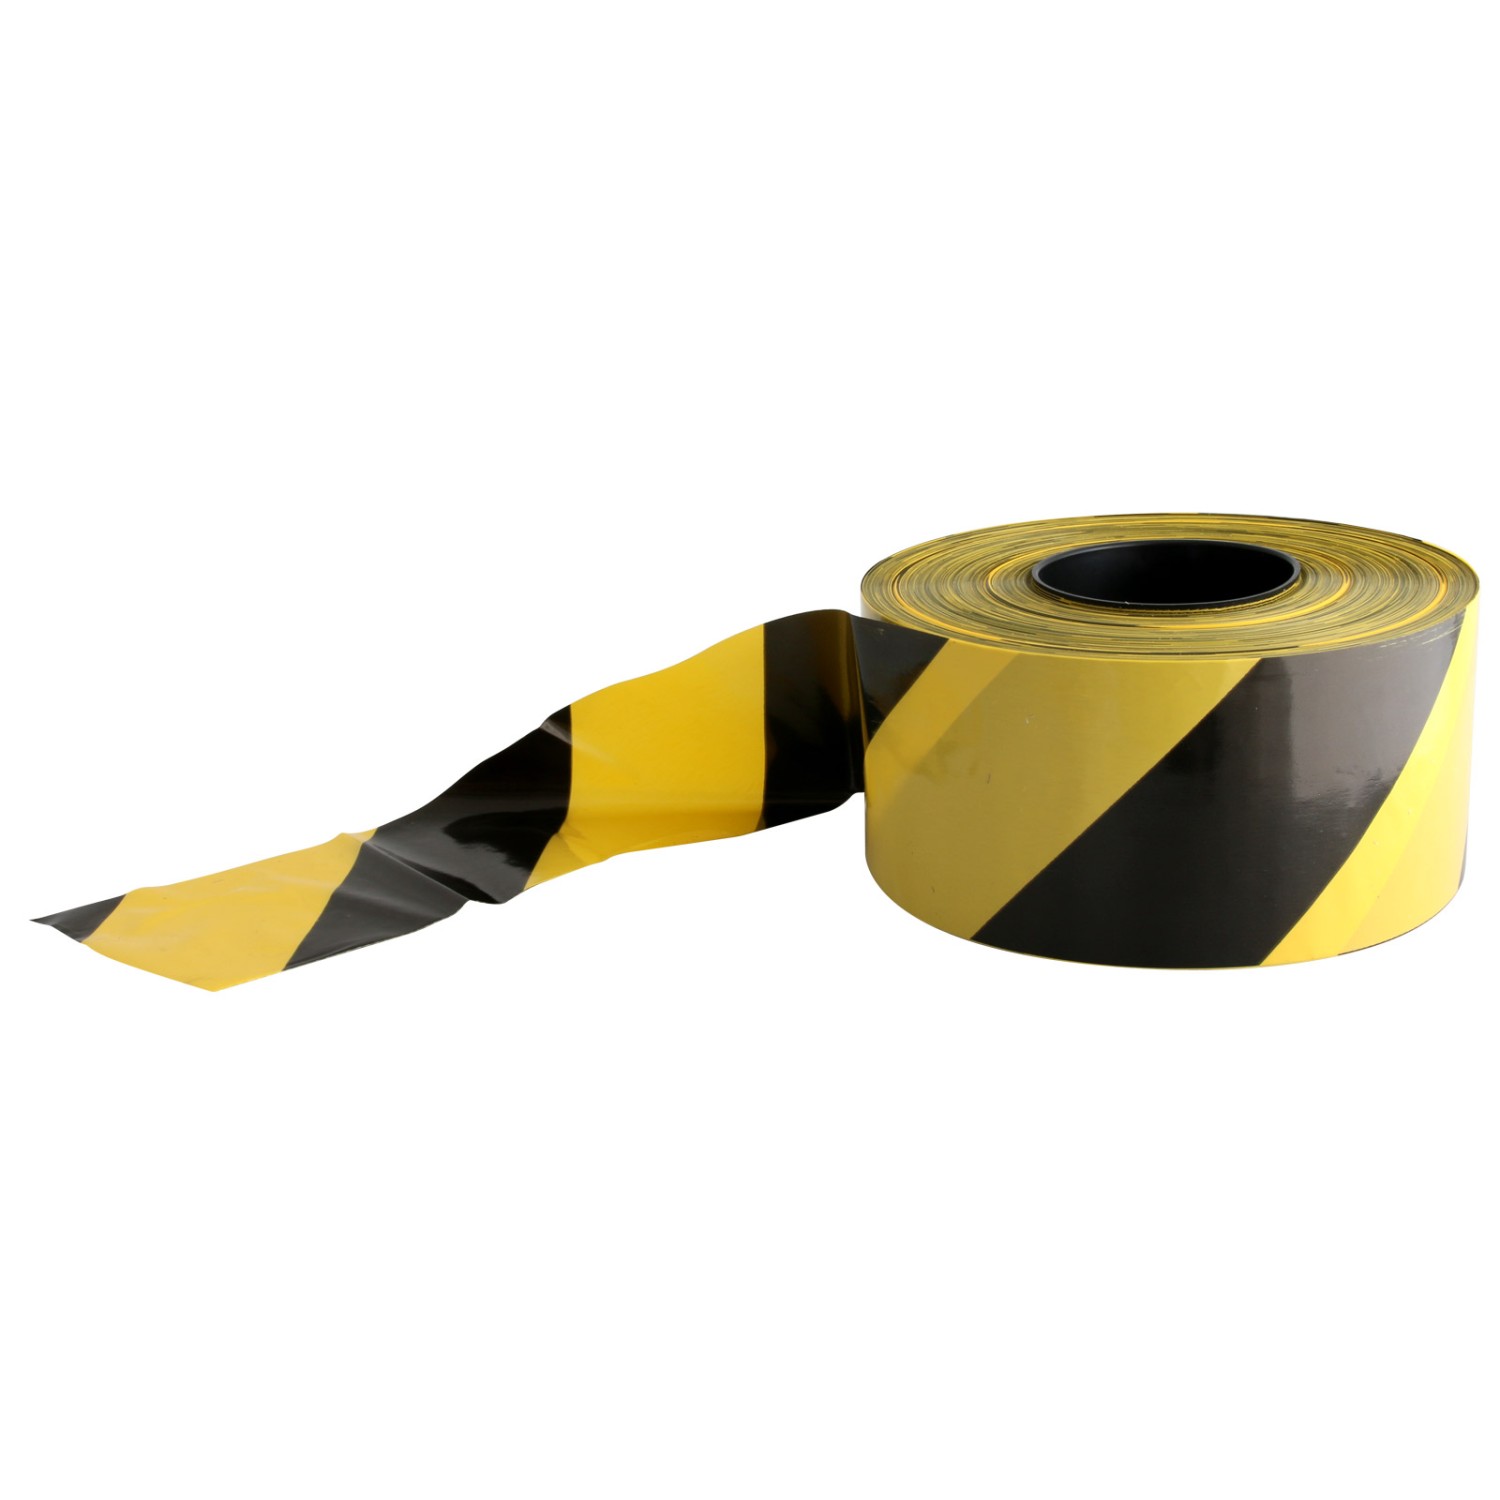 Absperrband Achtung Gefahrenbereich, gelb, Polyethylen, 80mm, 500m